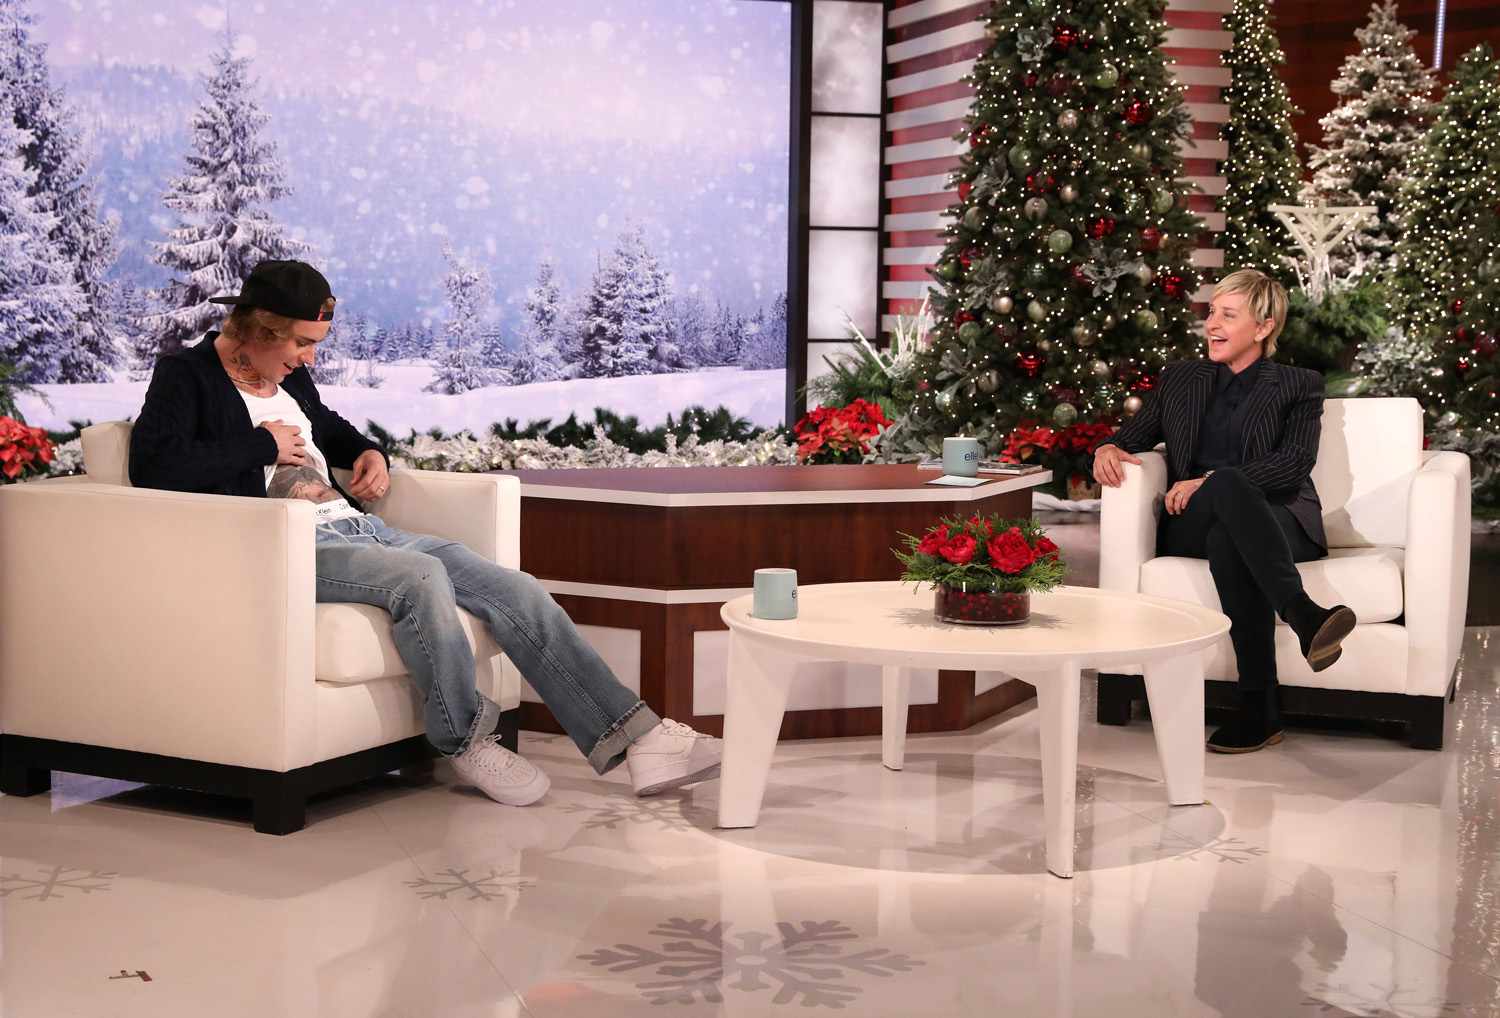 Justin Bieber on &ldquo;The Ellen DeGeneres Show